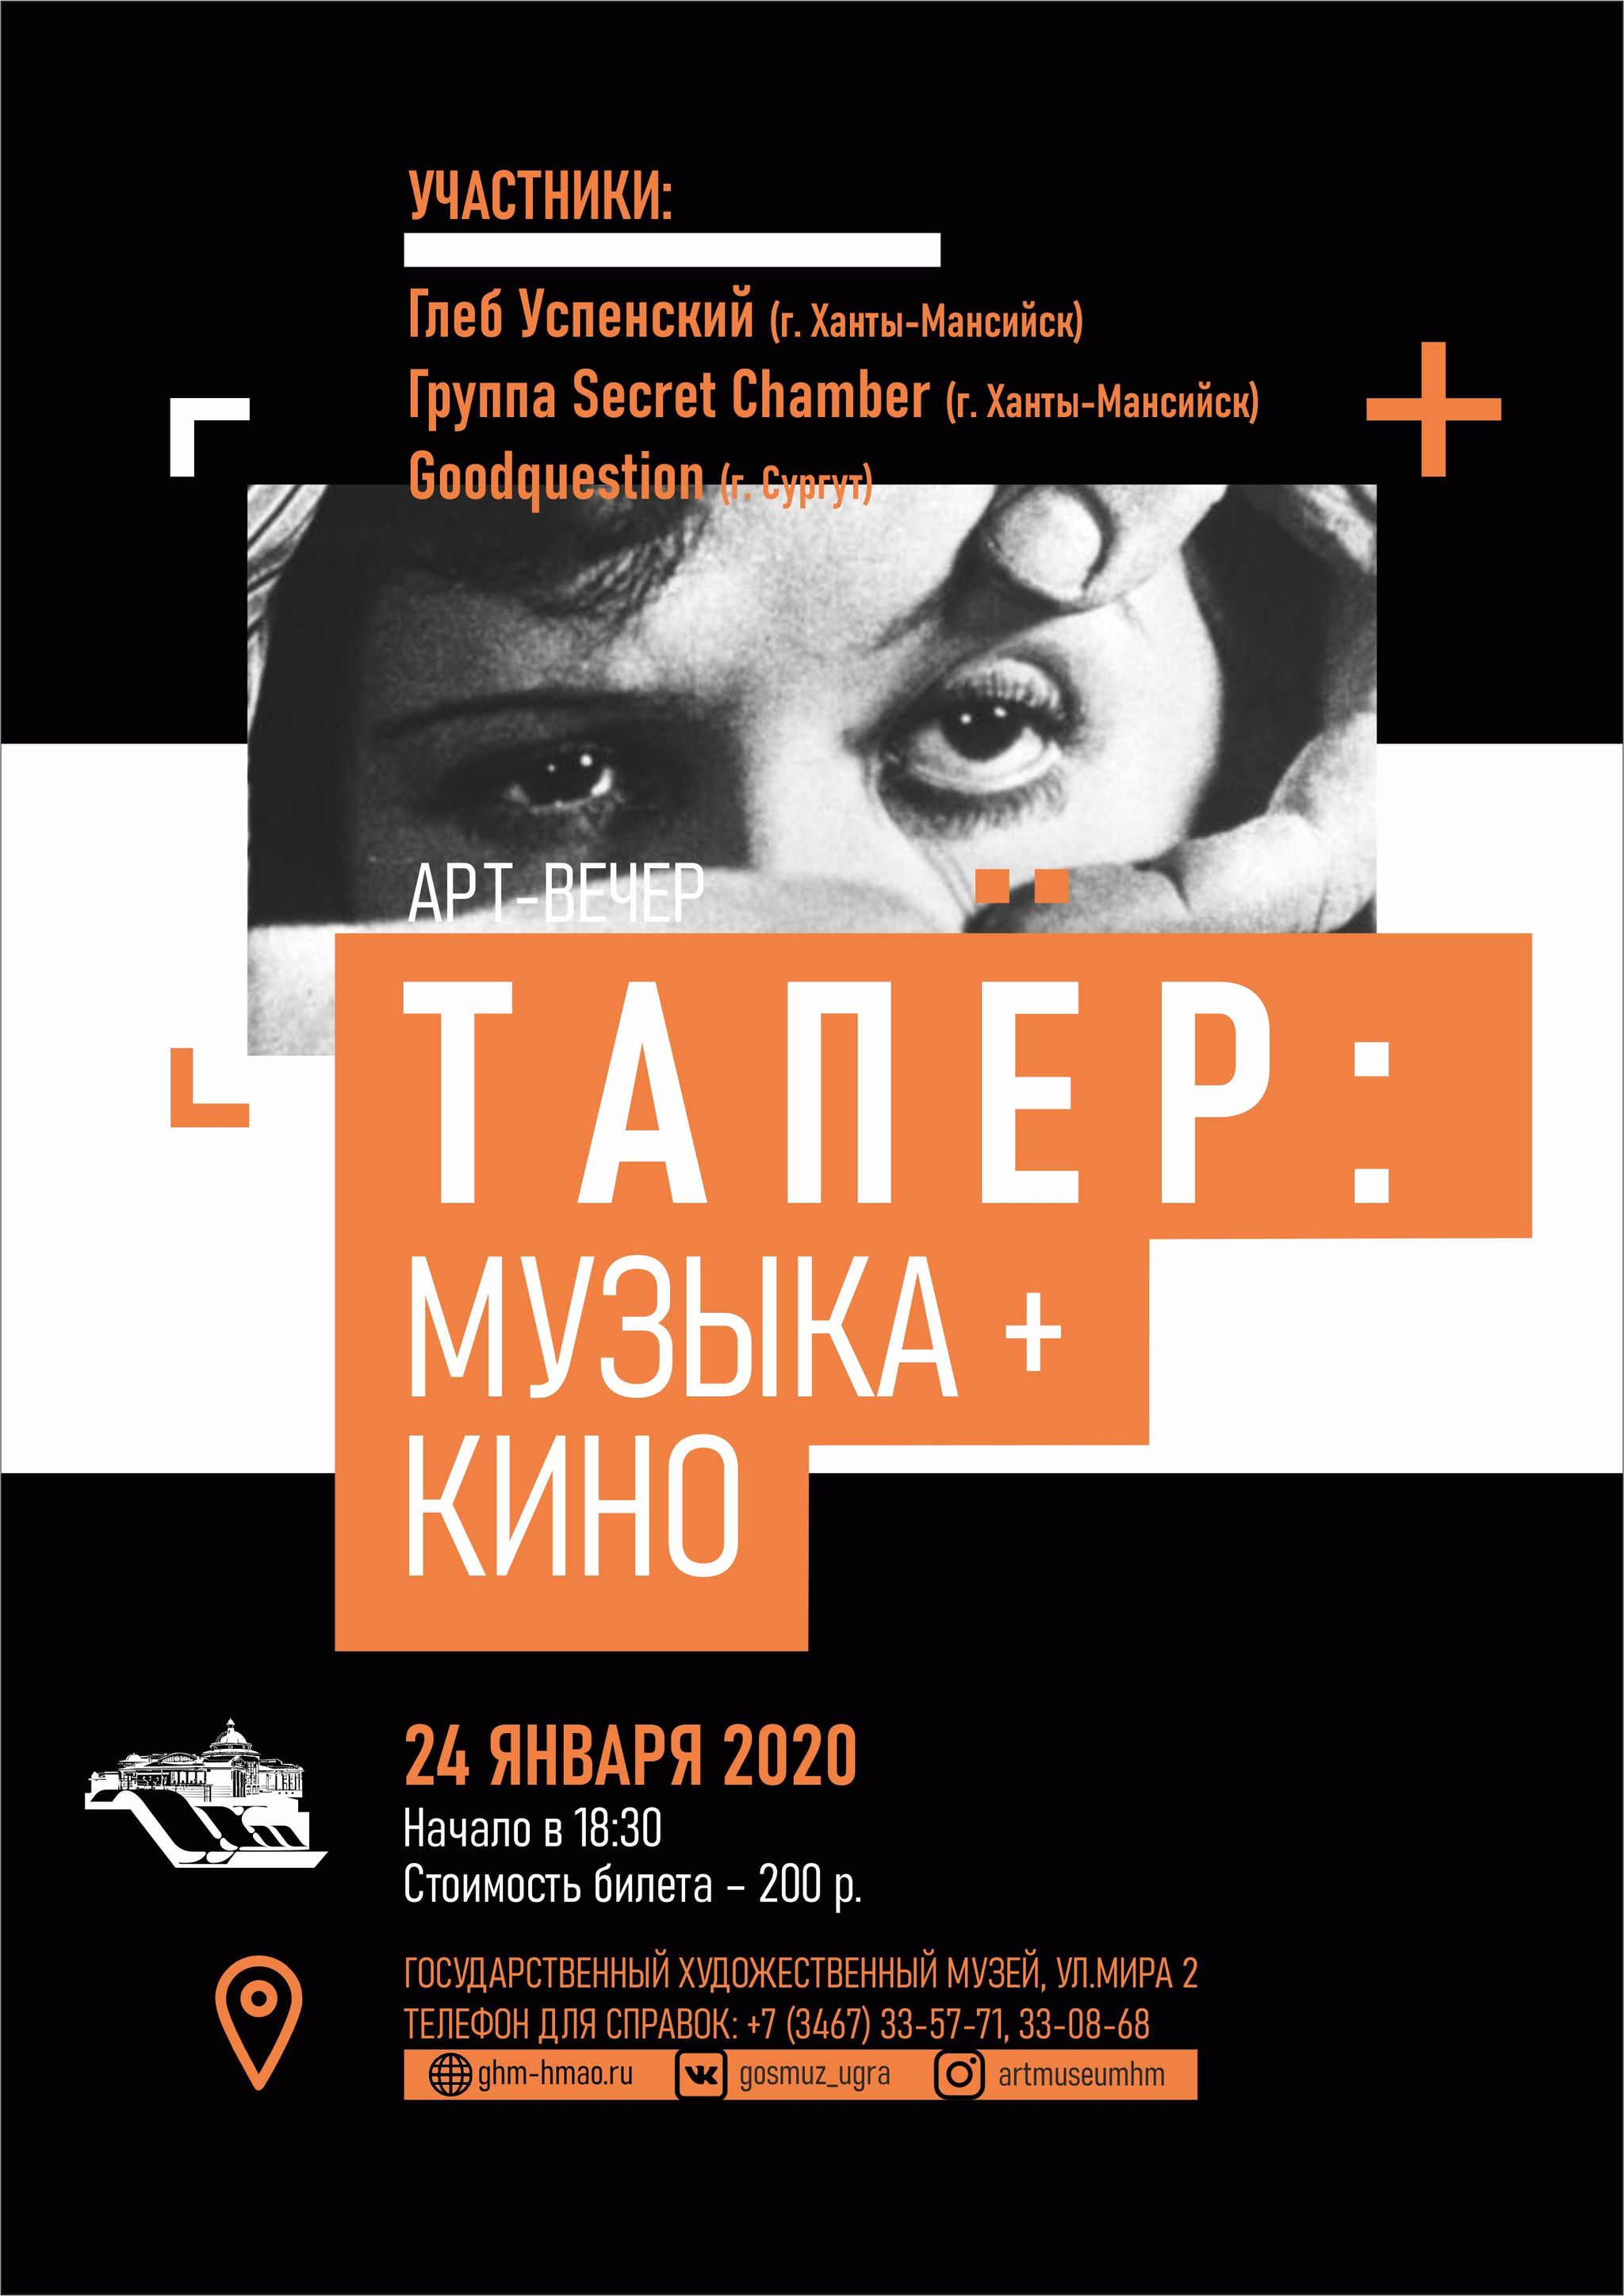 Государственный художественный музей предлагает посетить мини-фестиваль «Тапер: музыка+кино» 